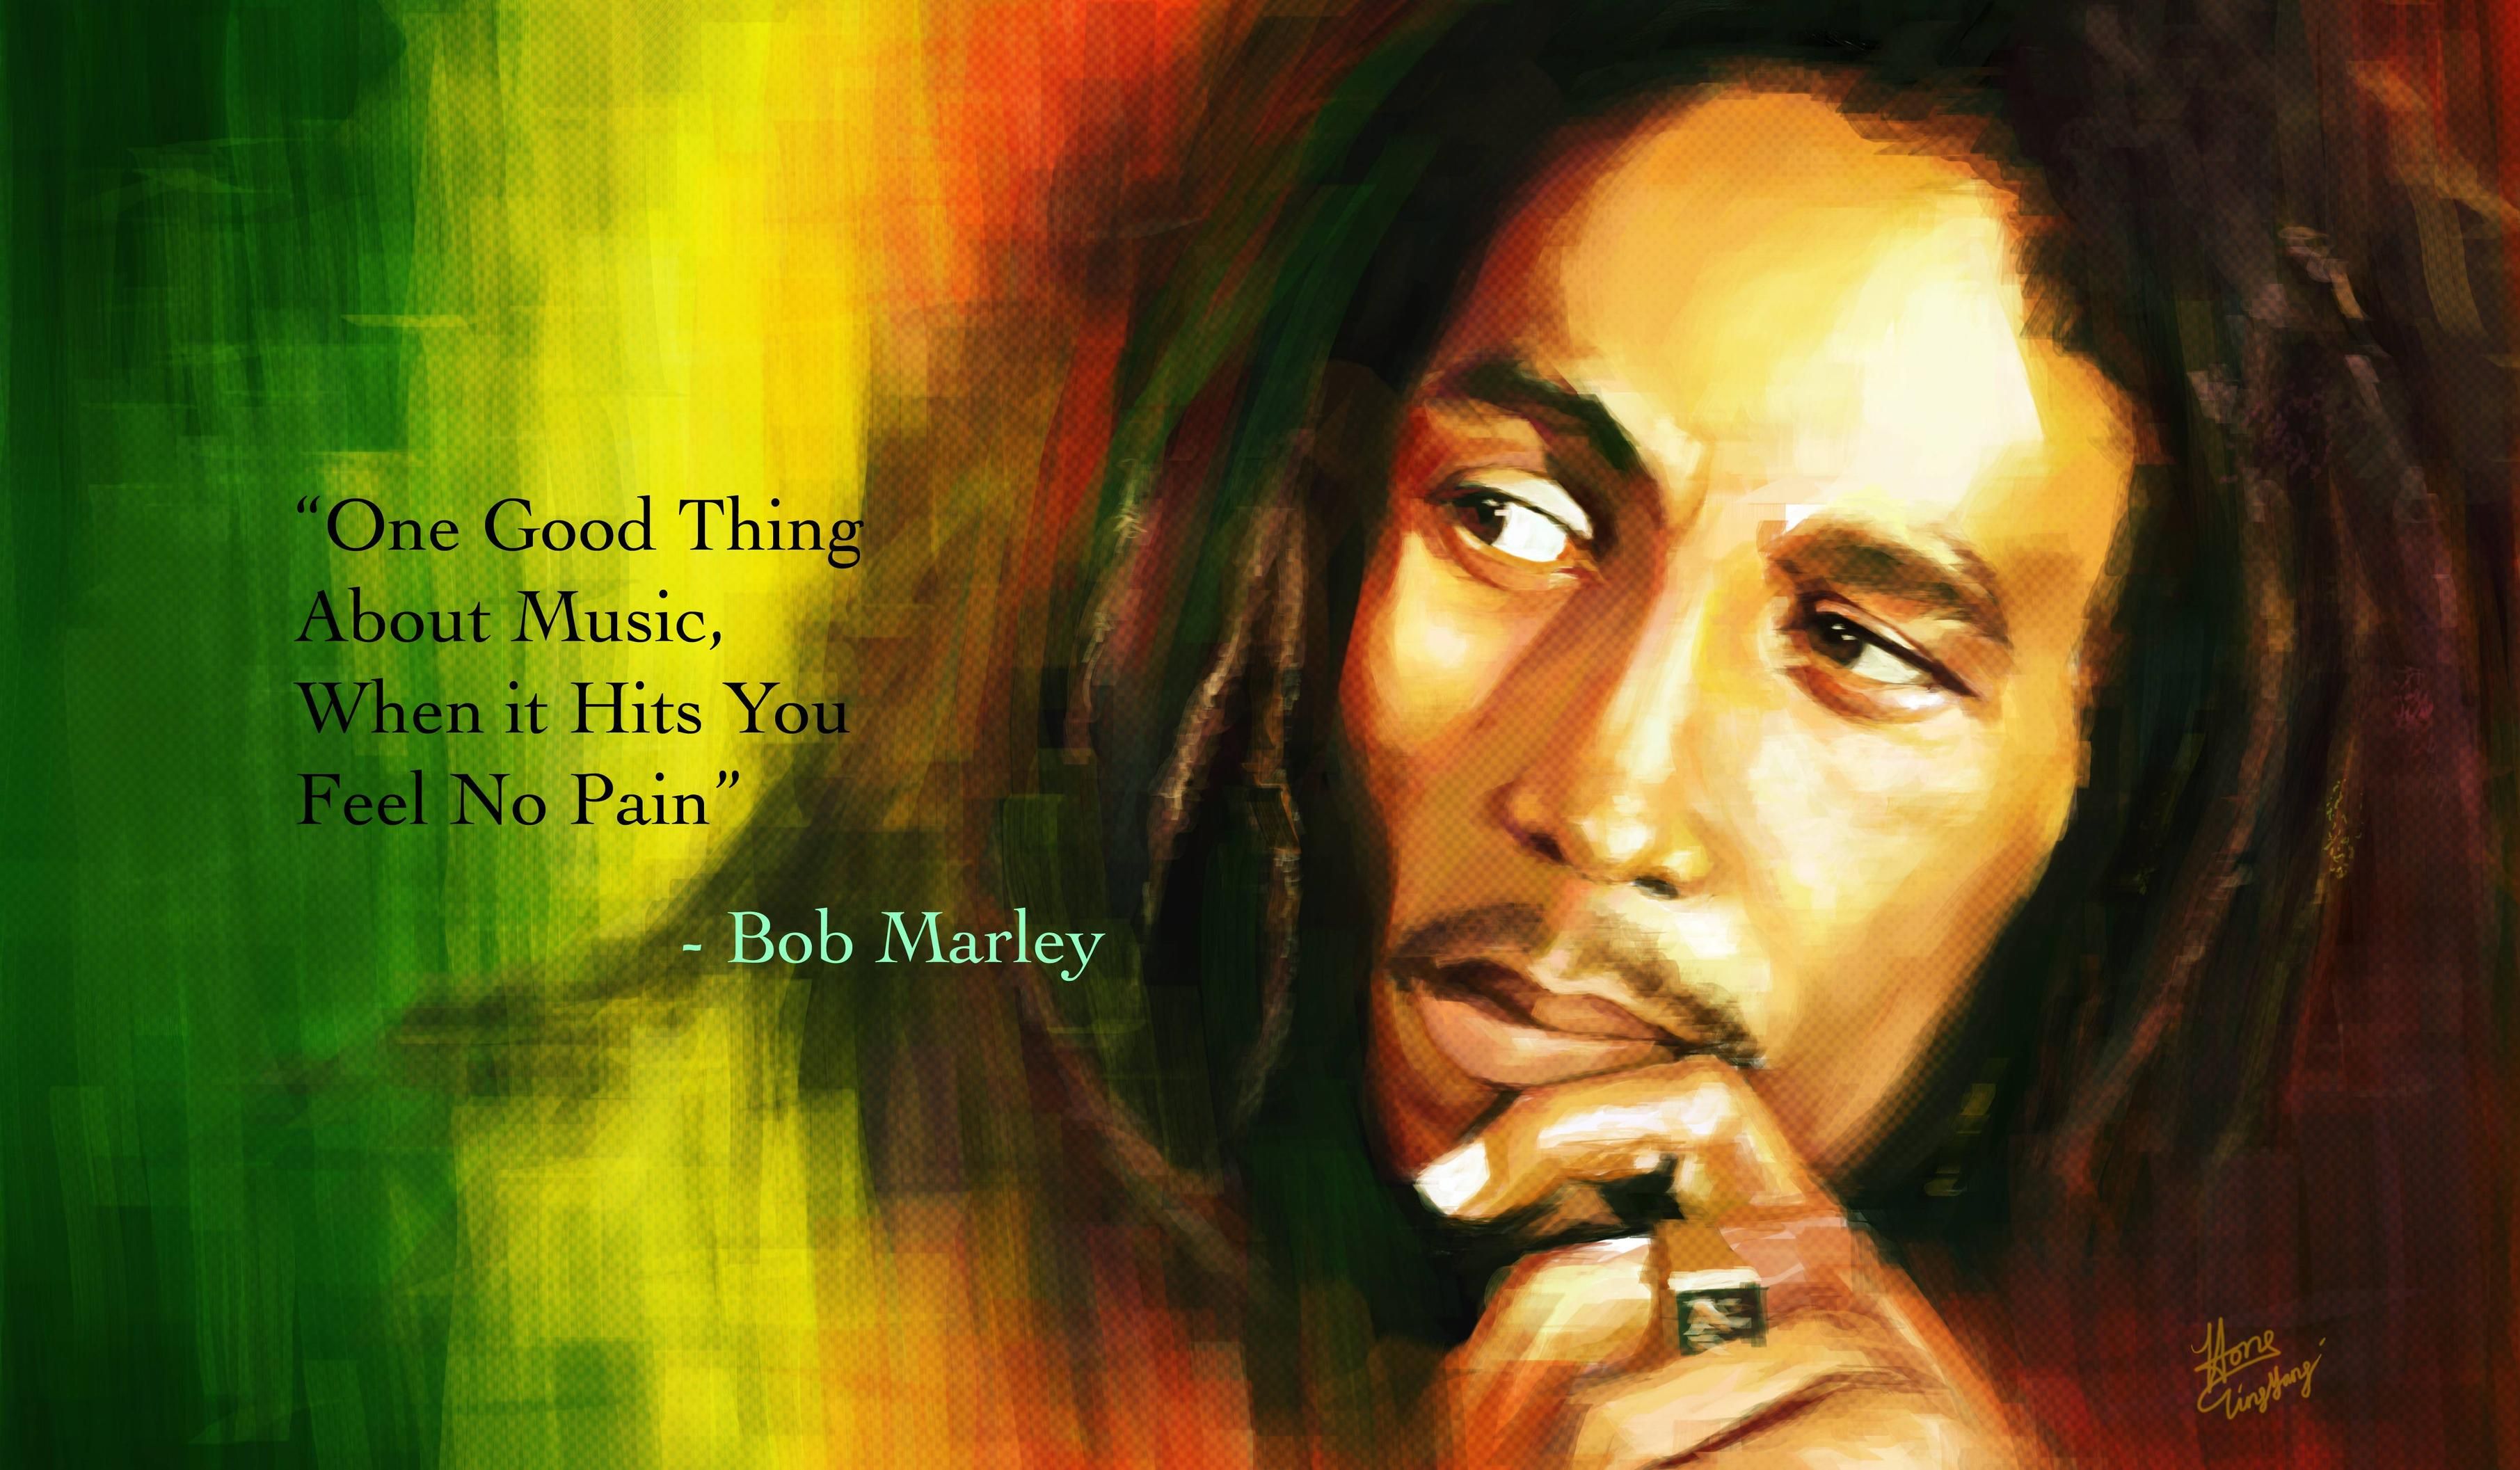 Bob Marley Quotes Wallpaper Hd Bob Marley Quotes - Bob Marley Quotes About Pain , HD Wallpaper & Backgrounds